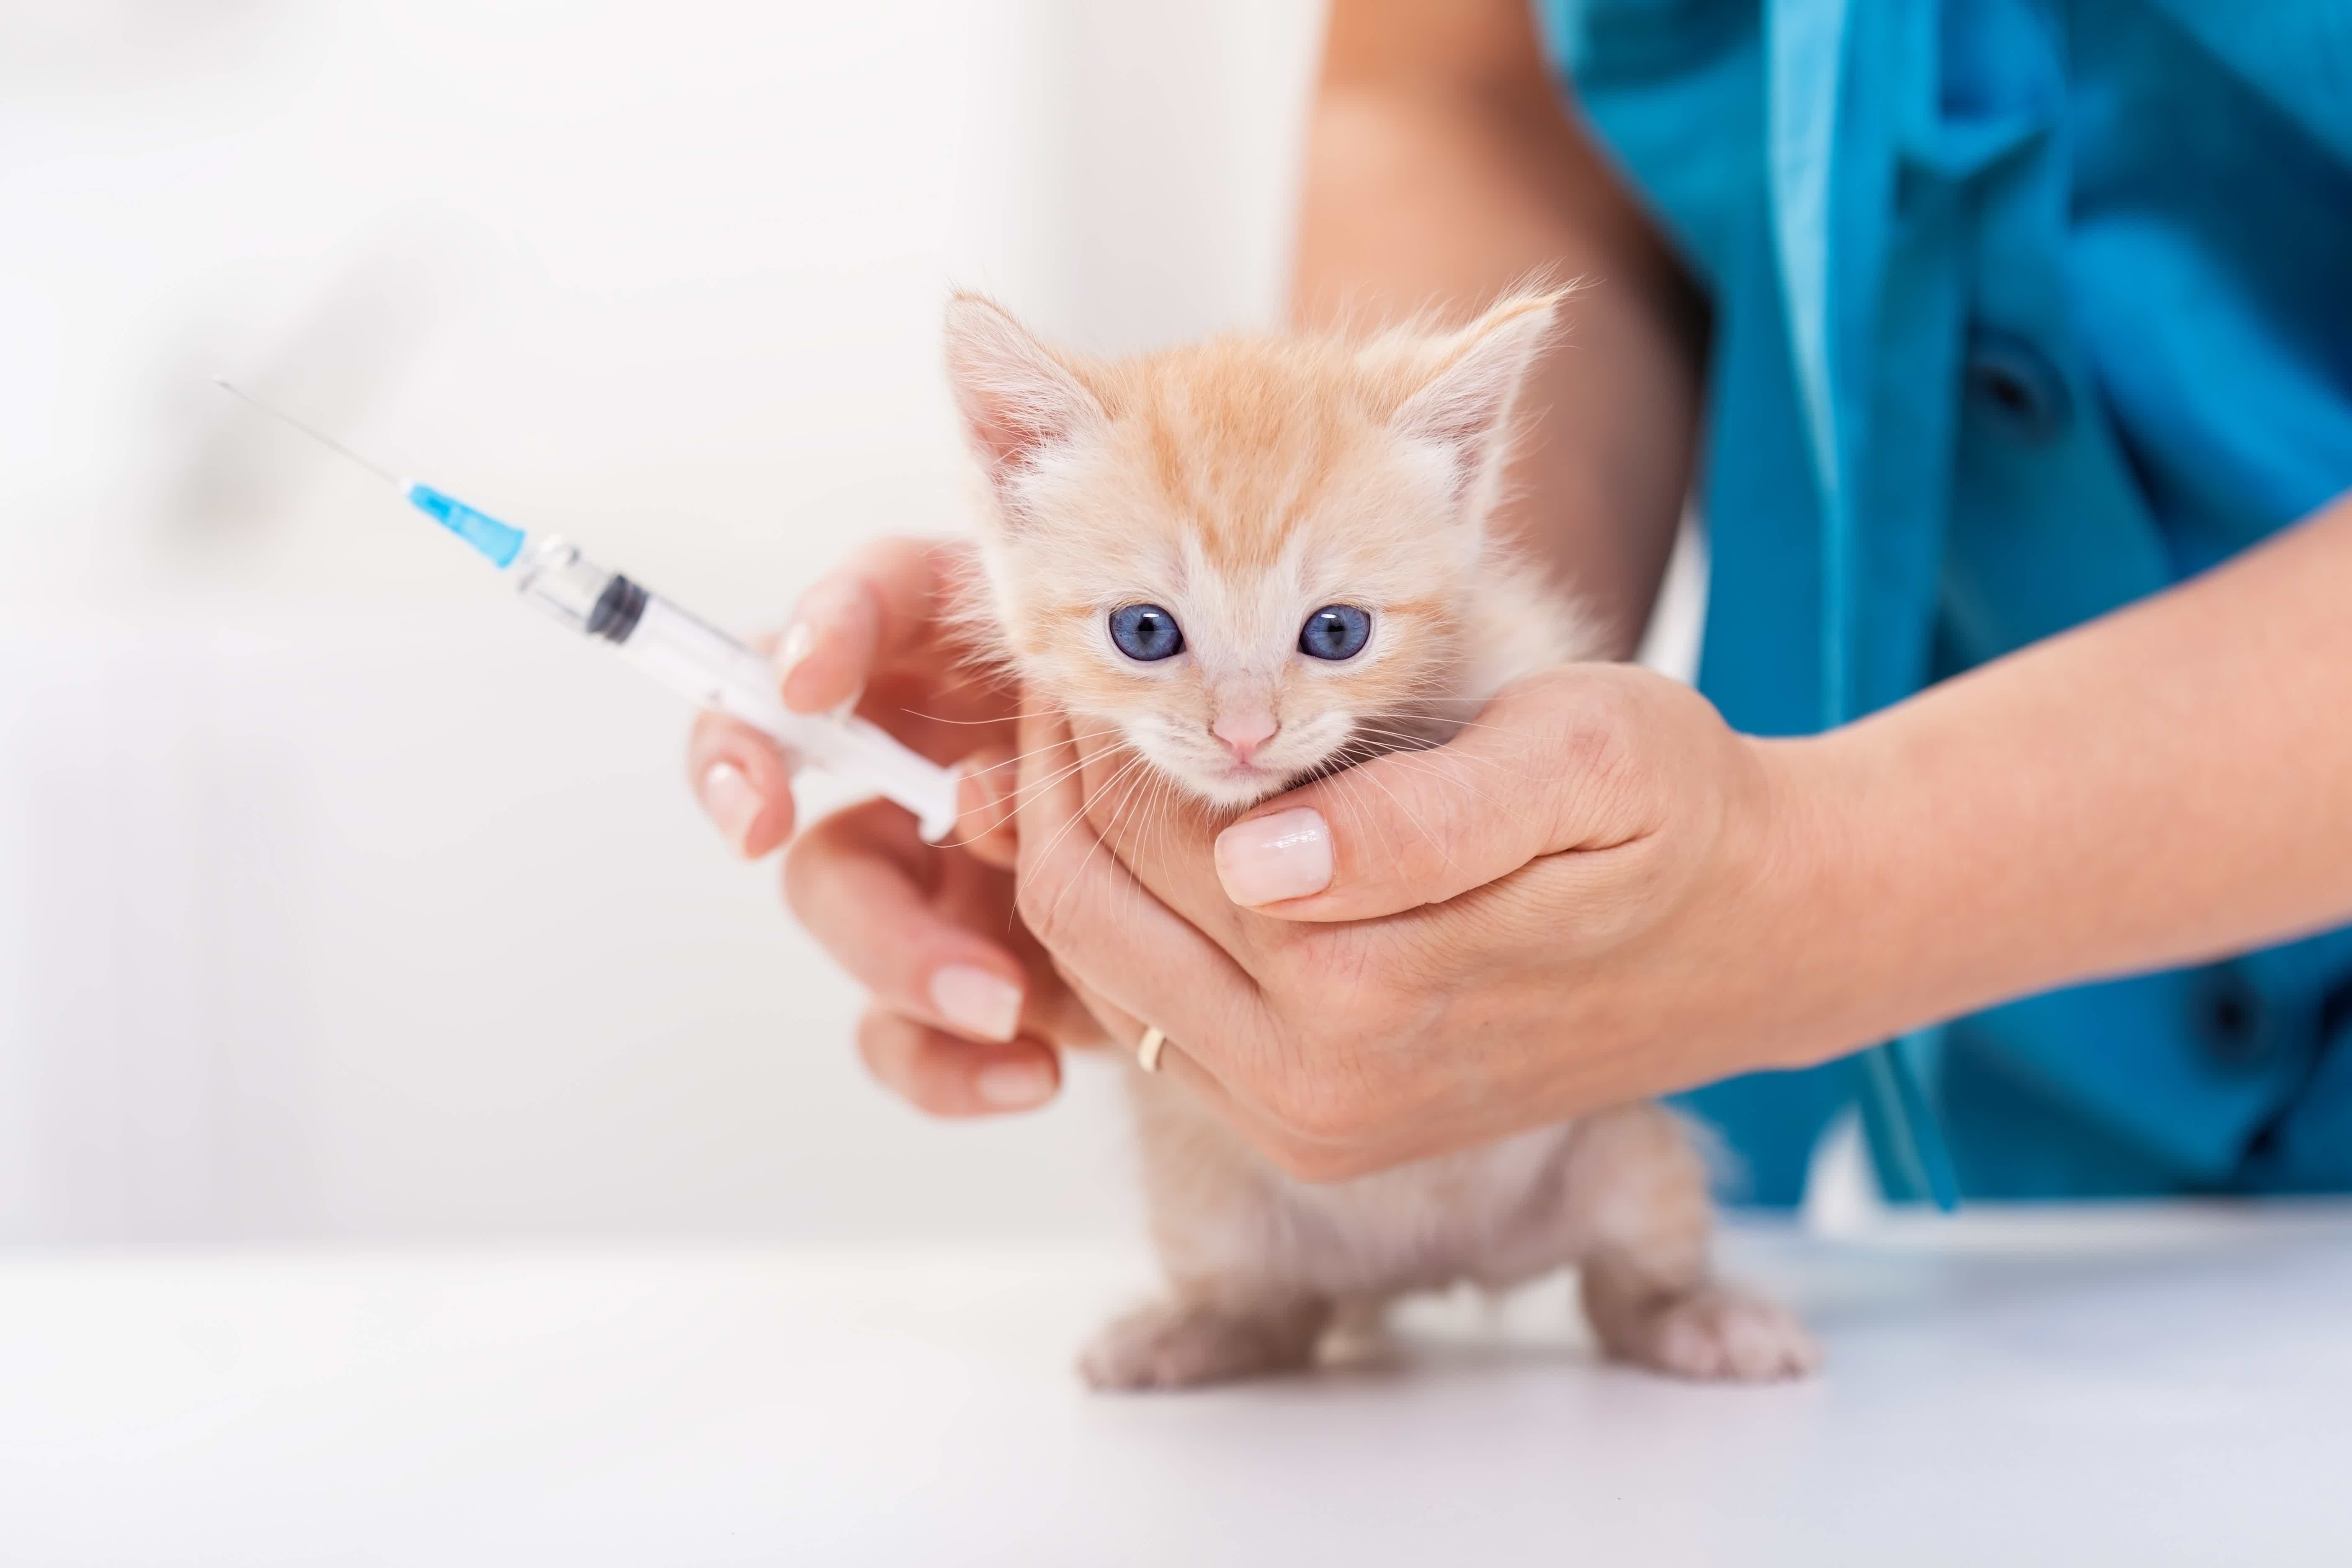 Mas, por que as vacinas são tão importantes para os felinos? Fonte: AdobeStock.